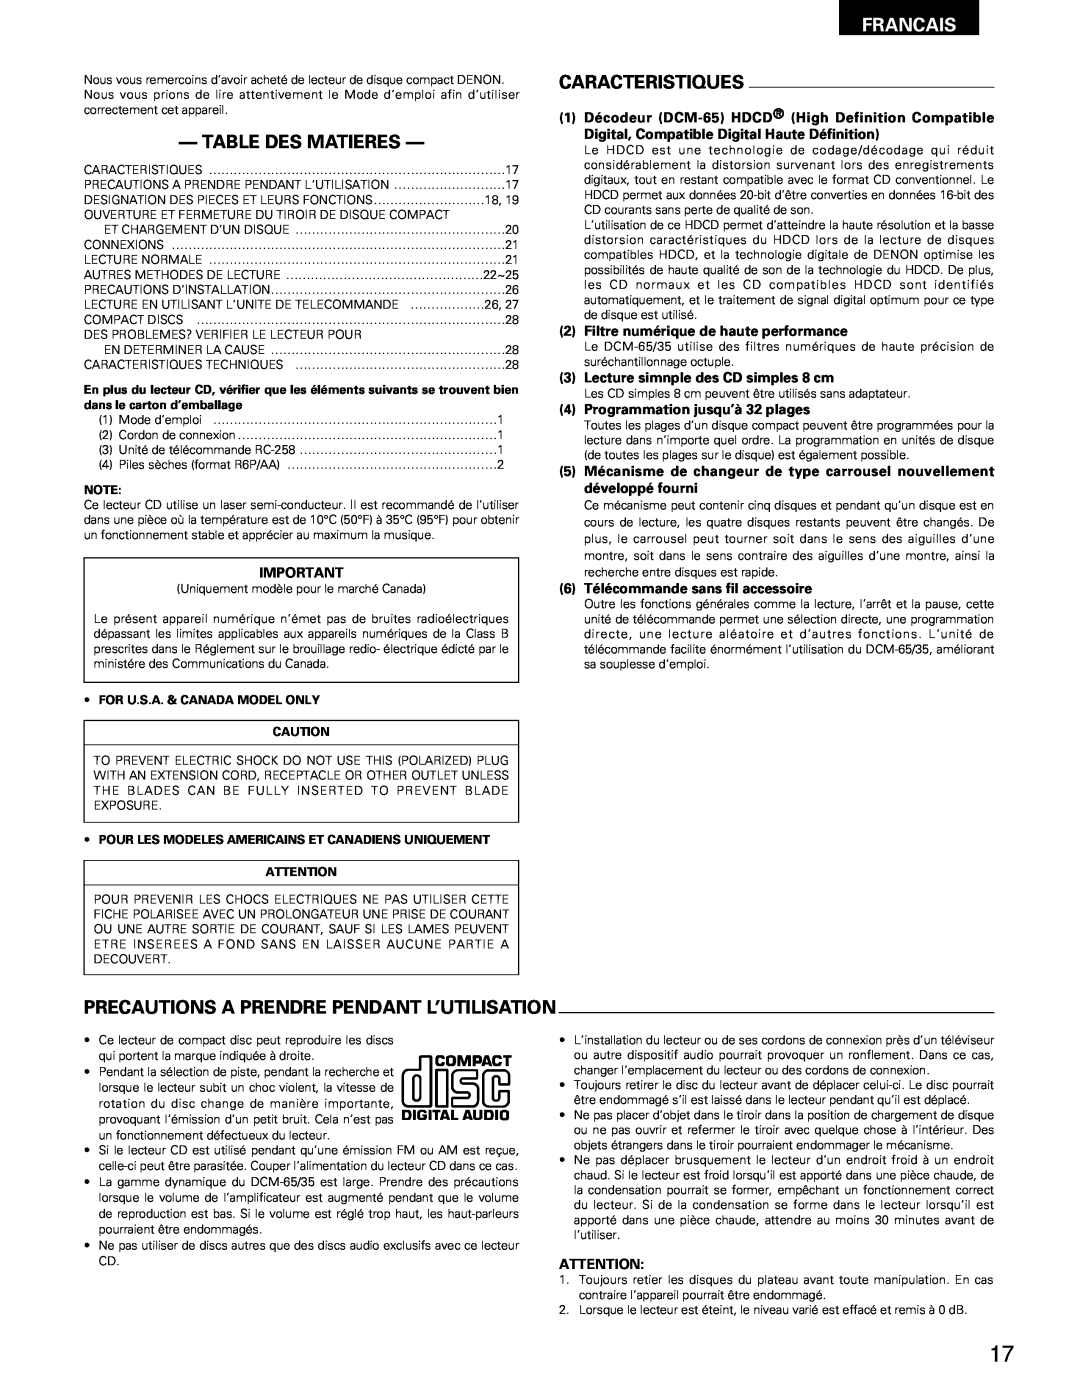 Denon DCM-65/35 manual Table Des Matieres, Francais, Caracteristiques, Precautions A Prendre Pendant L’Utilisation 